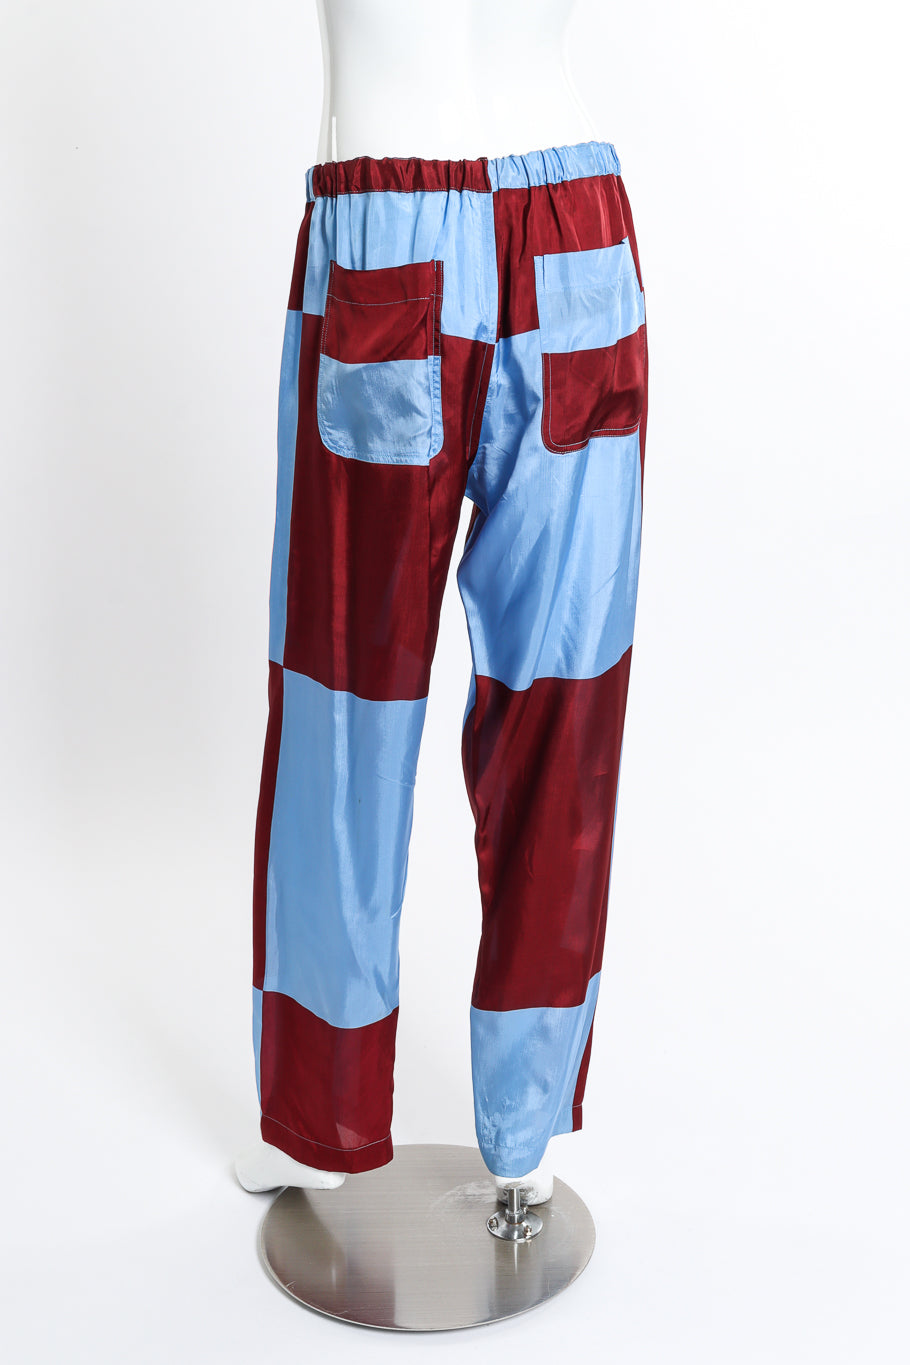 Comme des Garcons Colorblock Checker Pants back on mannequin @recess la